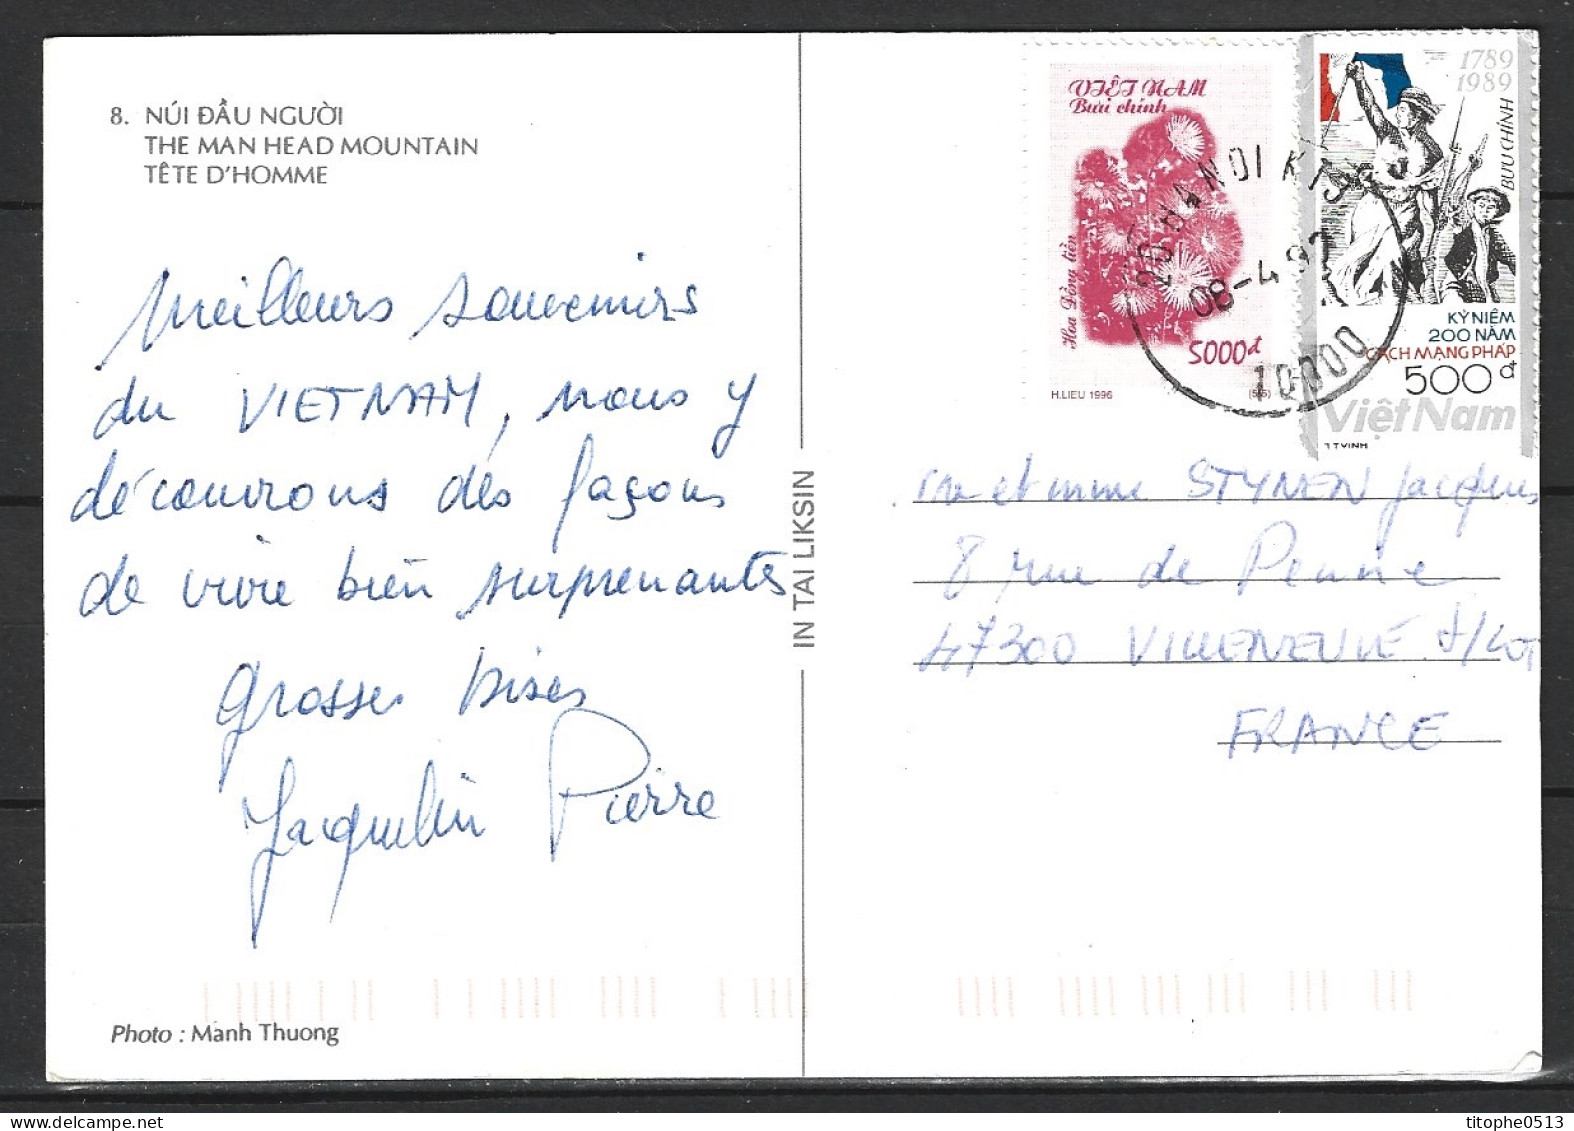 VIETNAM. N°988 De 1989 Sur Carte Postale Ayant Circulé. Liberté Guidant Le Peuple. - Révolution Française